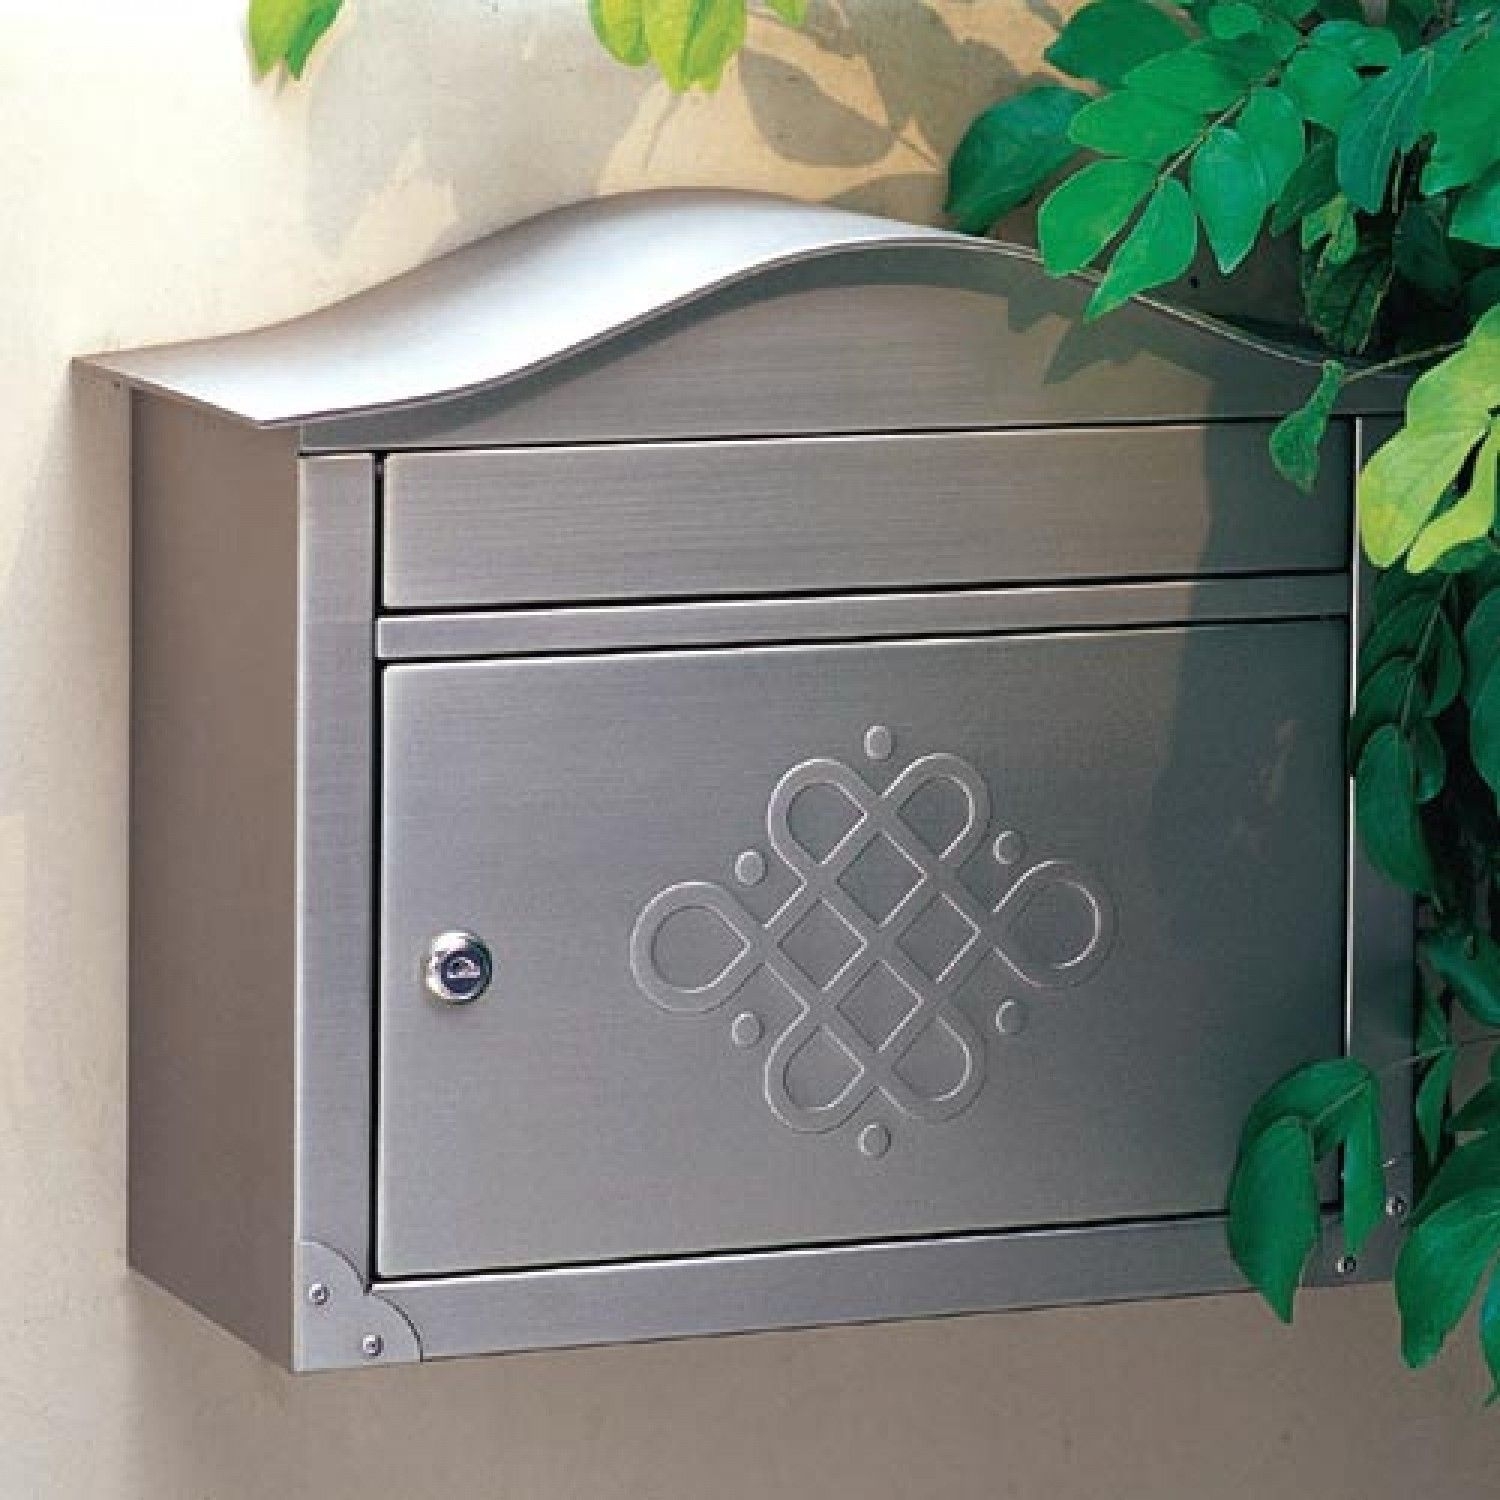 Locking wall mount mailboxes 16